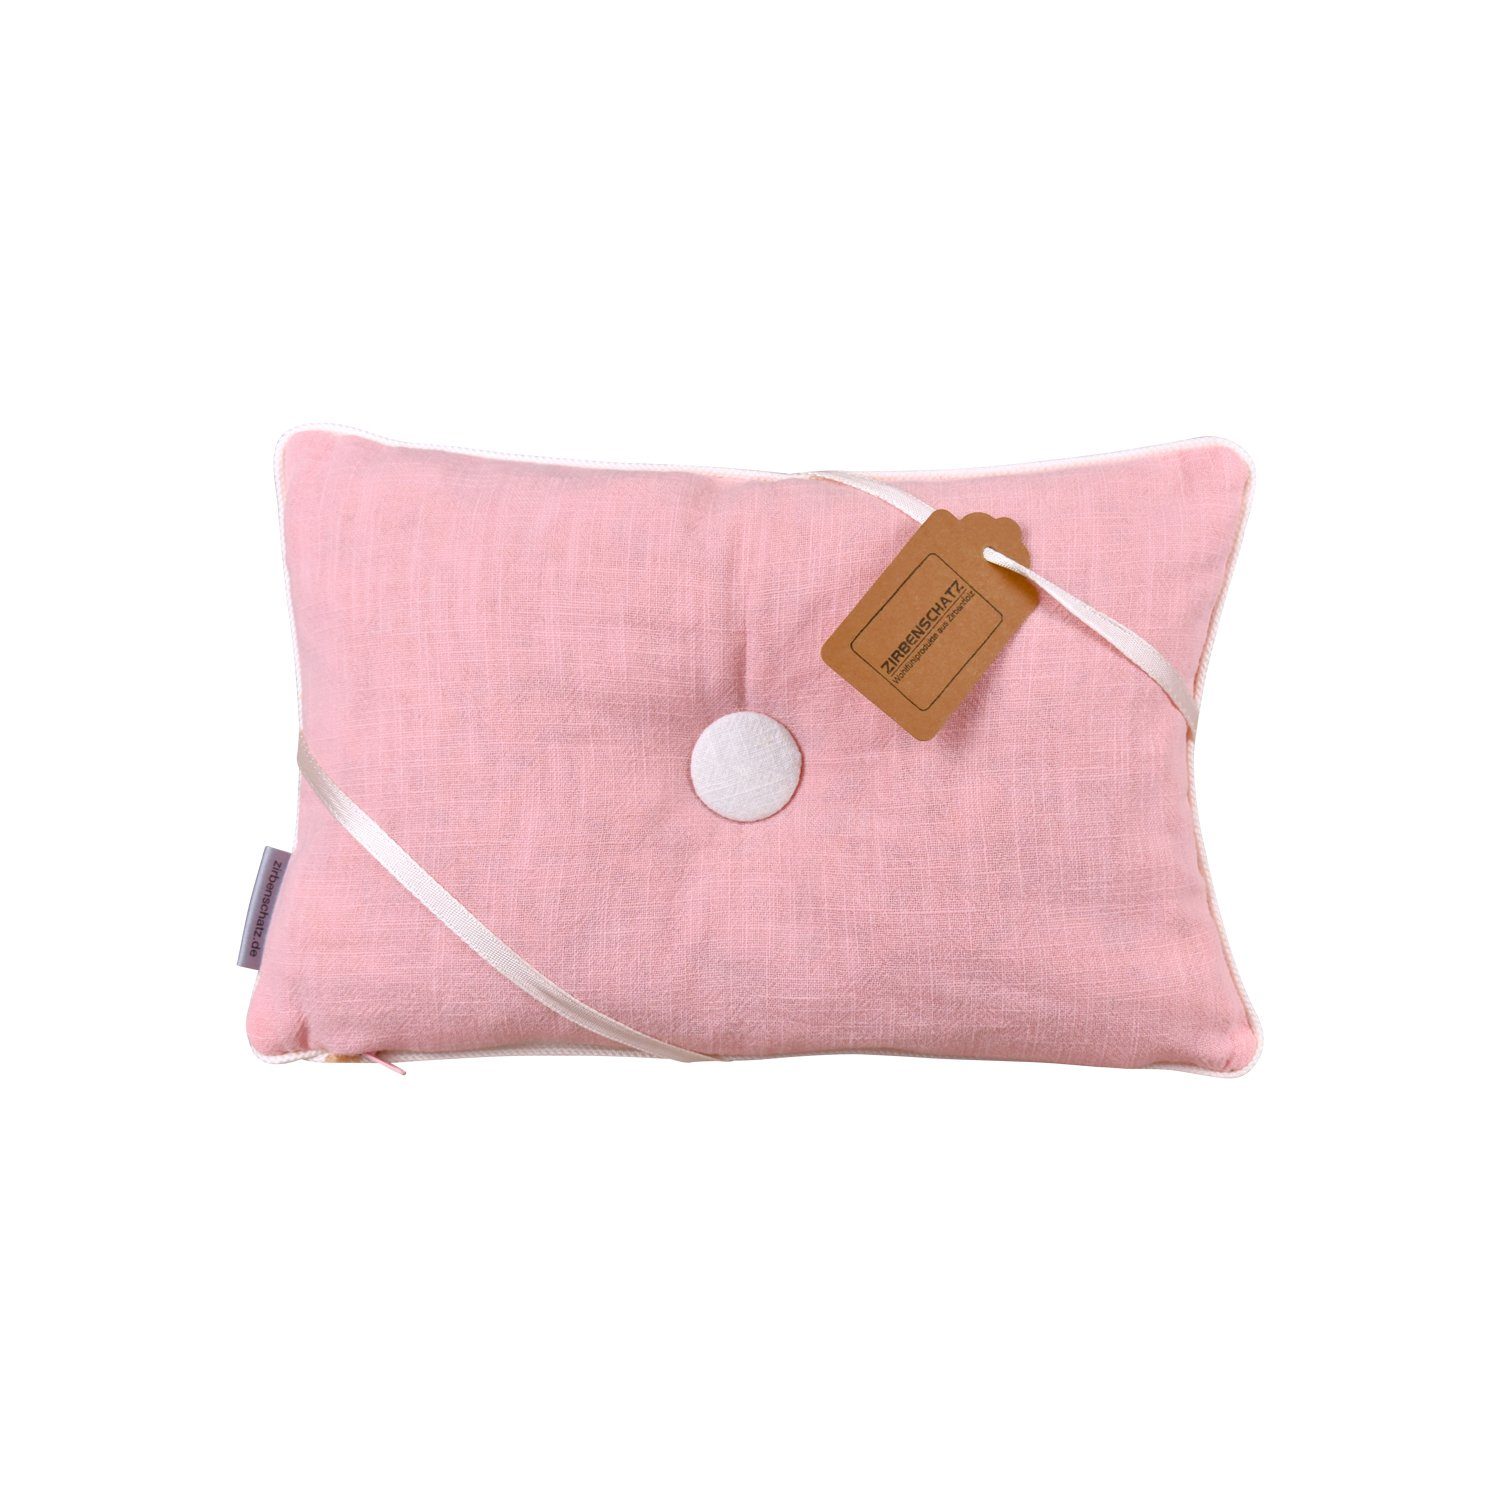 ZIRBENSCHATZ Zirbenkissen Zirbekissen rosa/weiß mit Knopf rechteckig, 1 Zirbenkissen, 1-tlg., 1 Kissen, wohltuender Zirbenduft und angenehmer Liegekomfort